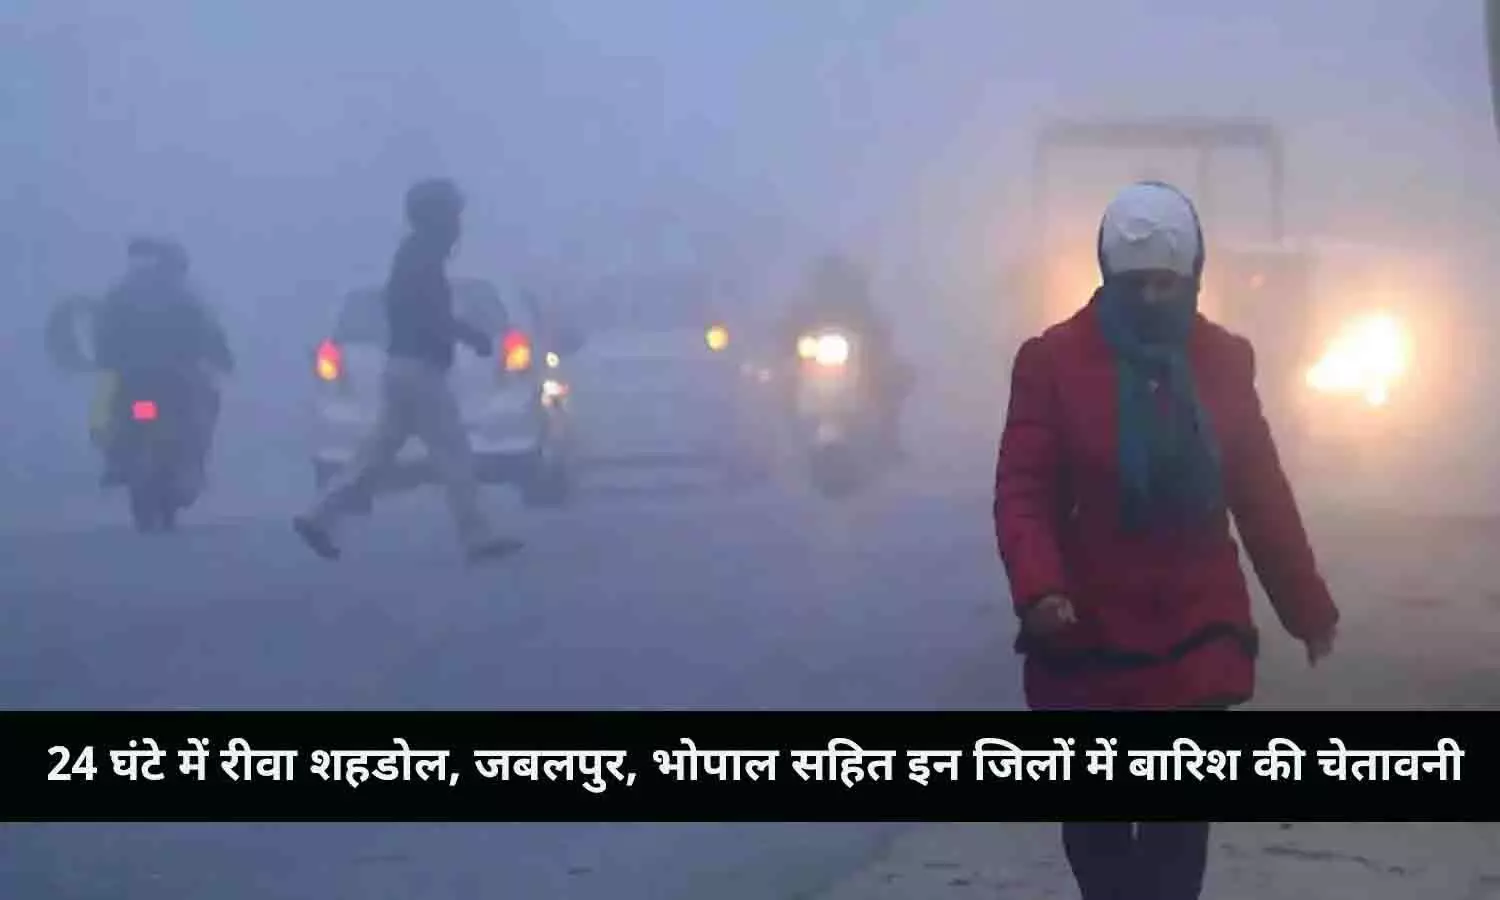 24 घंटे में रीवा शहडोल, जबलपुर, भोपाल सहित इन जिलों में बारिश की चेतावनी, कोहरे-धुंध को लेकर भी Latest Update